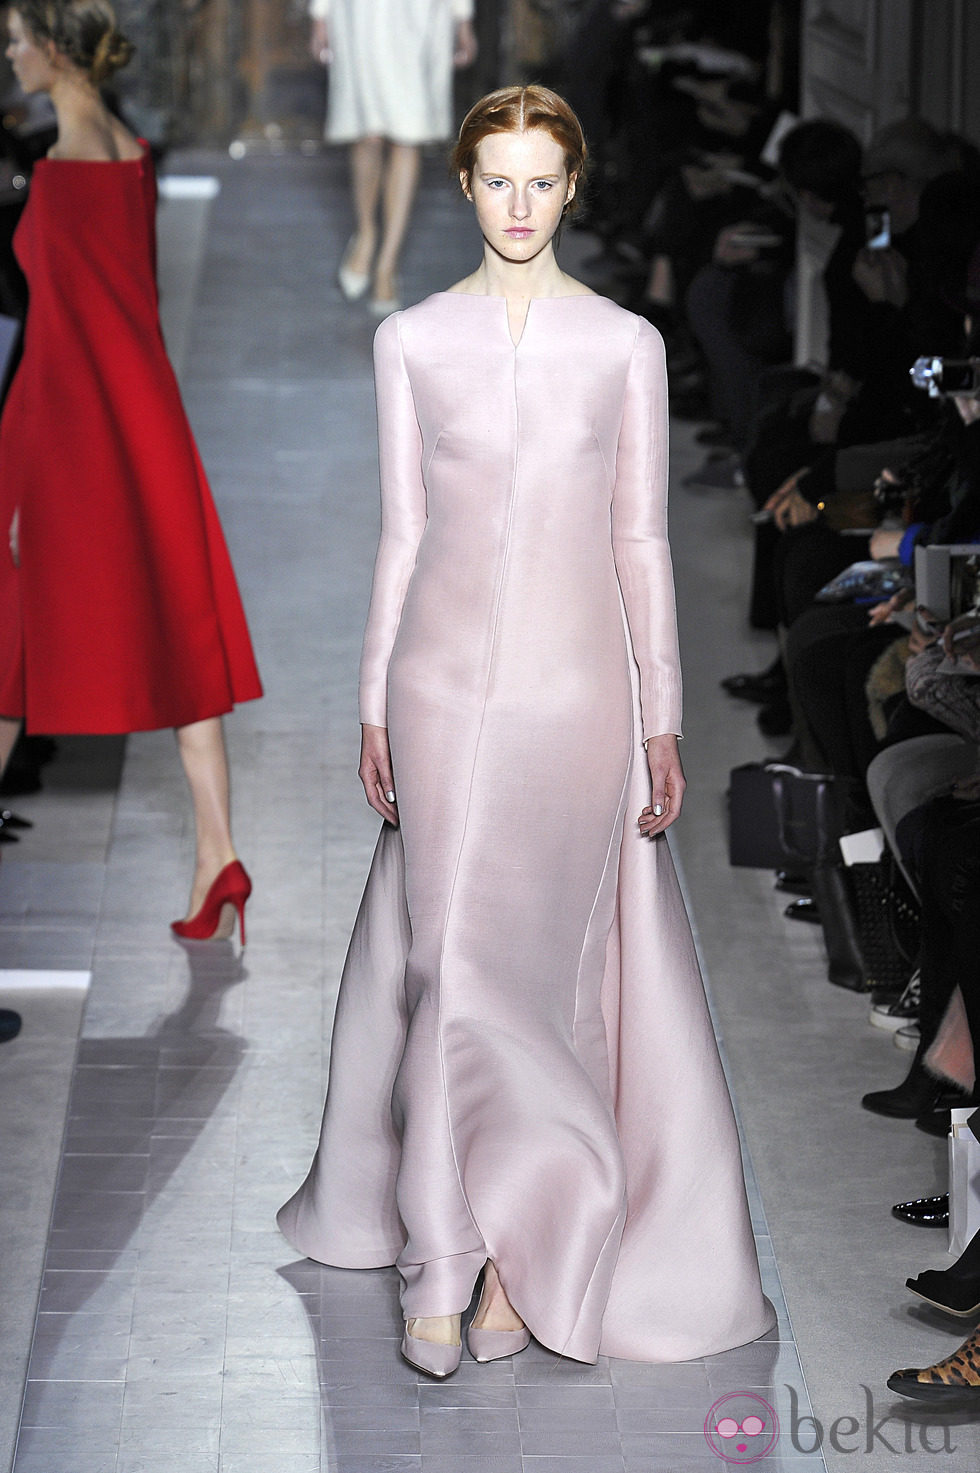 Vestido rosa palo de la colección primavera/verano 2013 de Valentino en la Semana de la Alta Costura de París